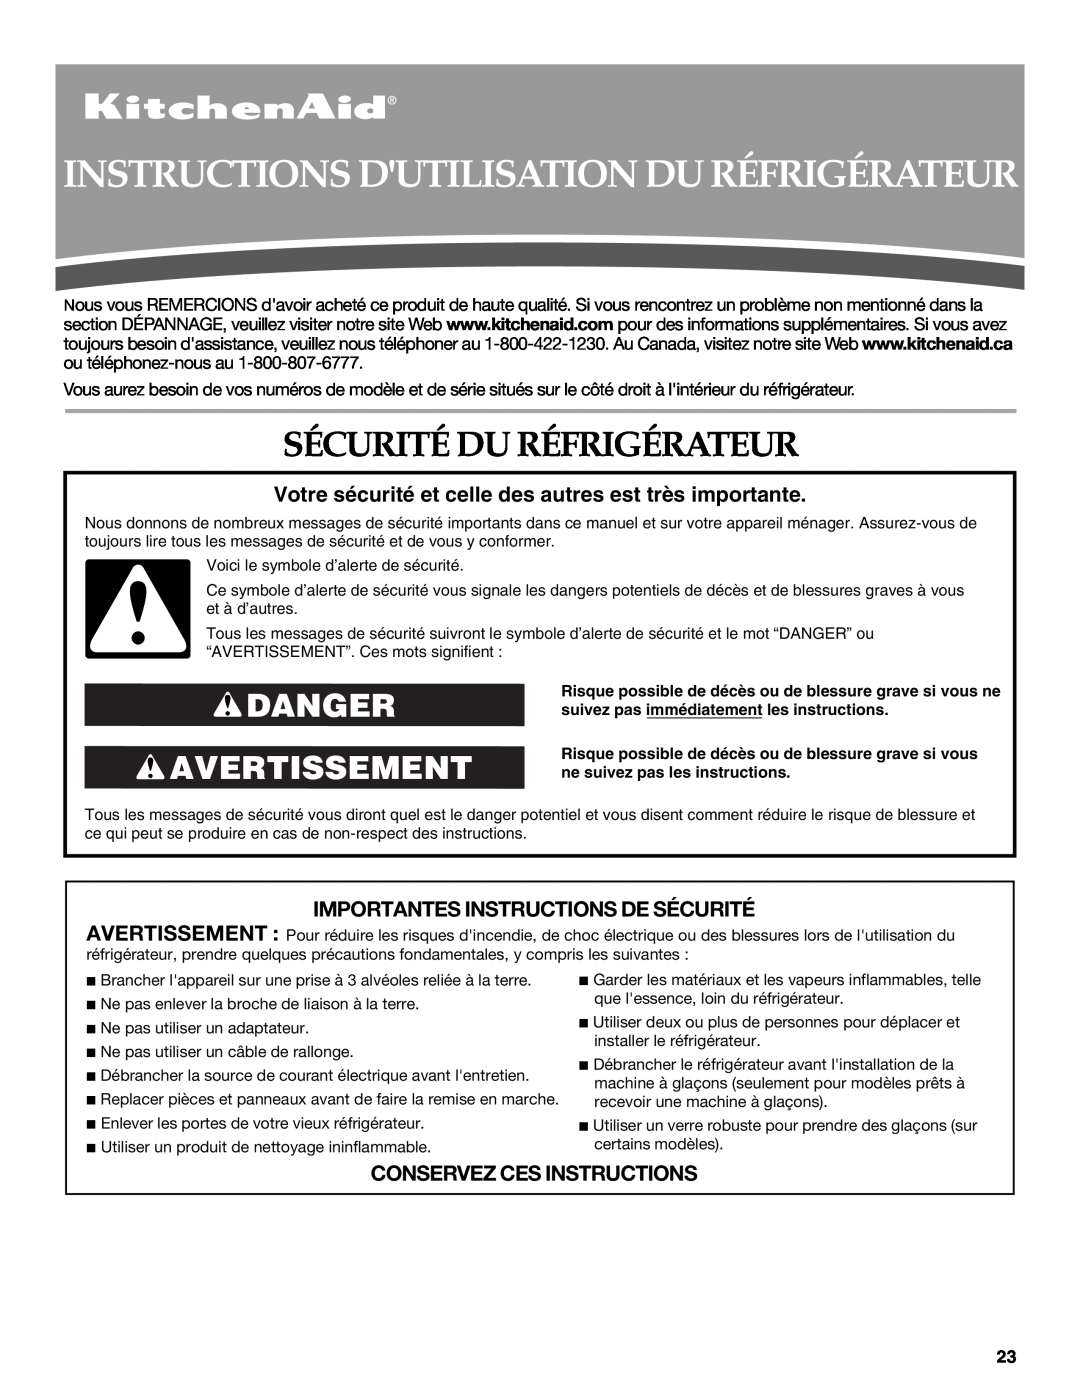 KitchenAid W10162435A warranty Instructions Dutilisation Du Réfrigérateur, Sécurité Du Réfrigérateur, Danger Avertissement 